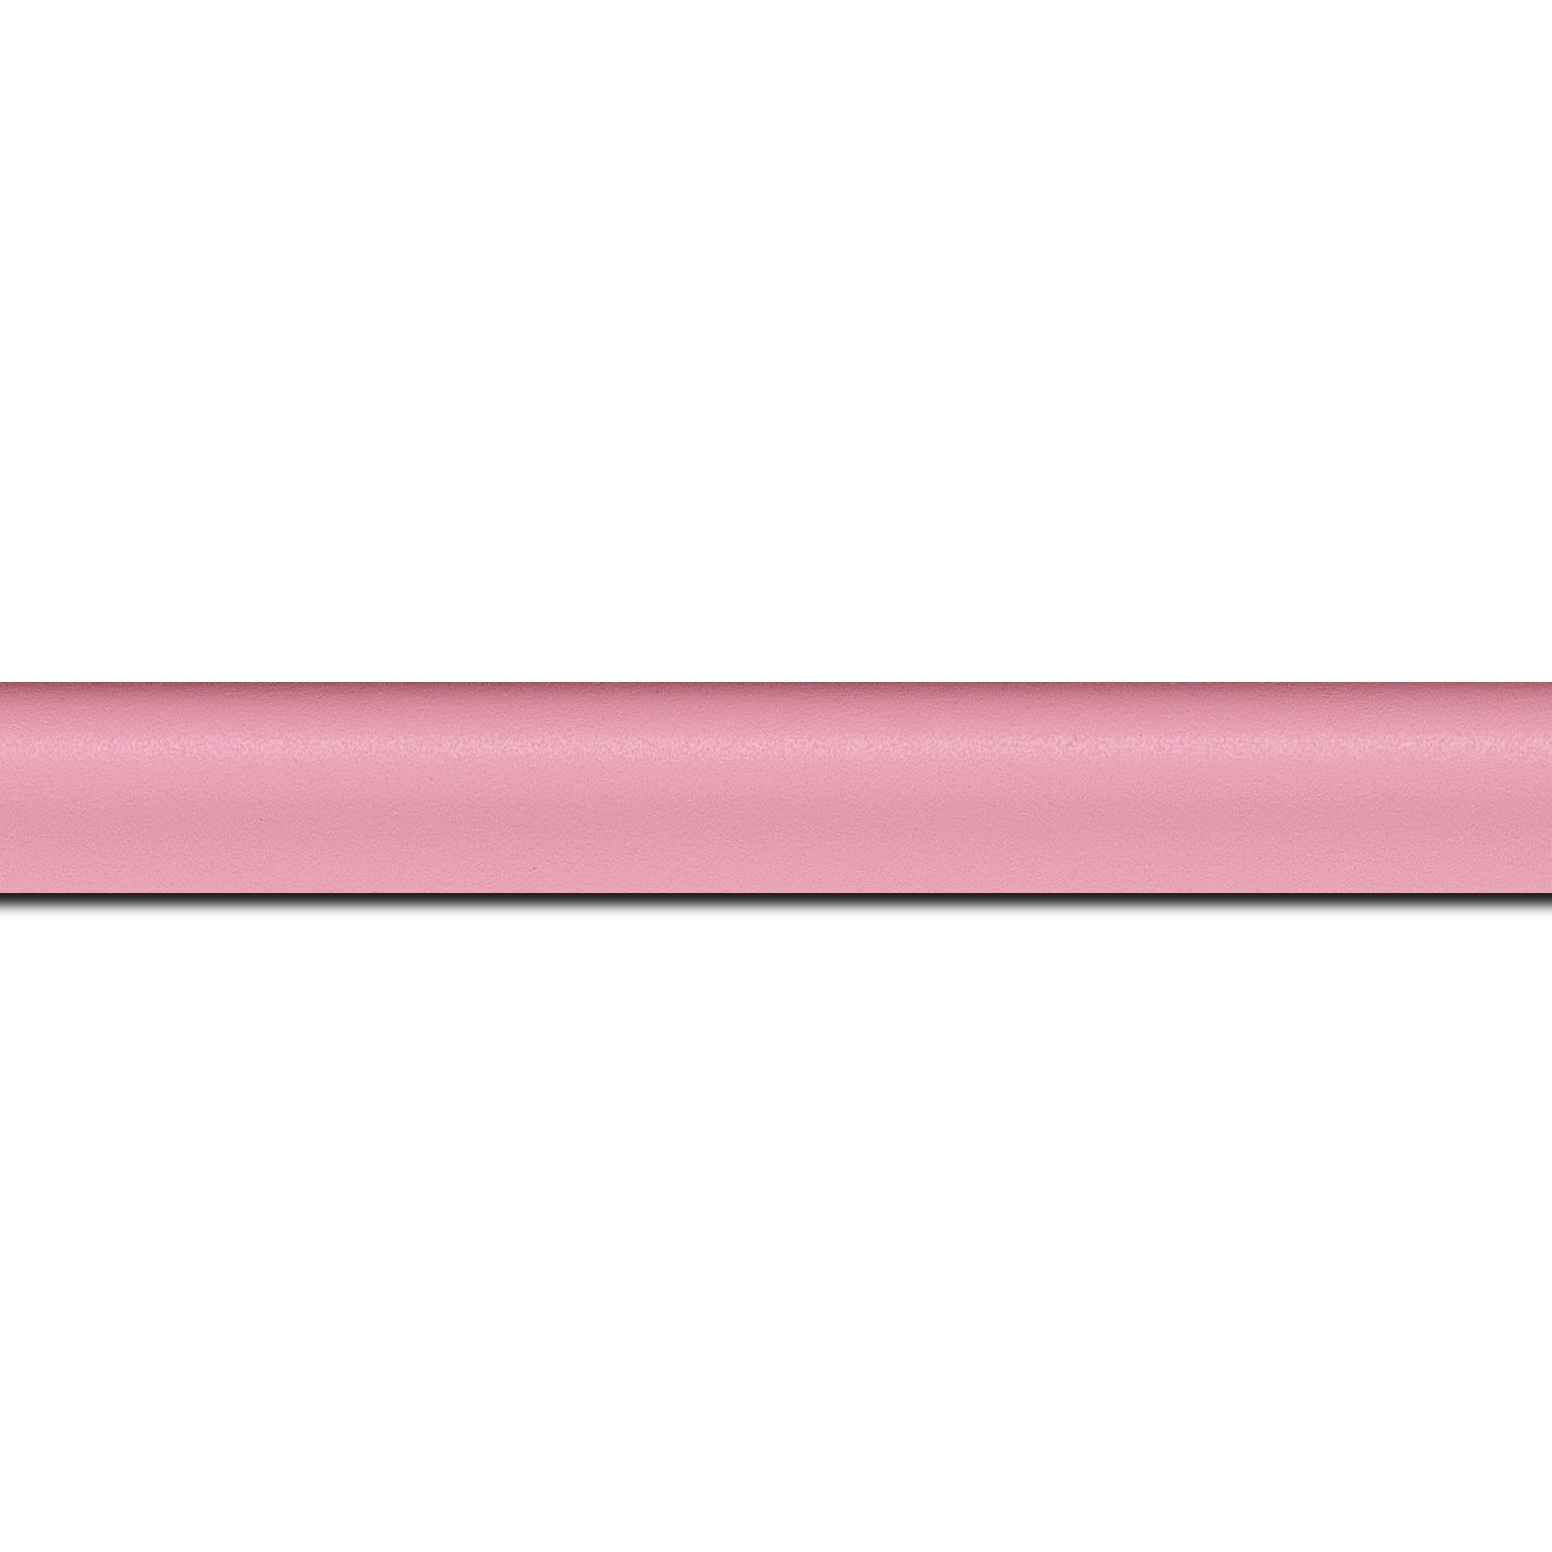 Baguette longueur 1.40m bois profil incurvé largeur 2.1cm couleur rose tendre satiné